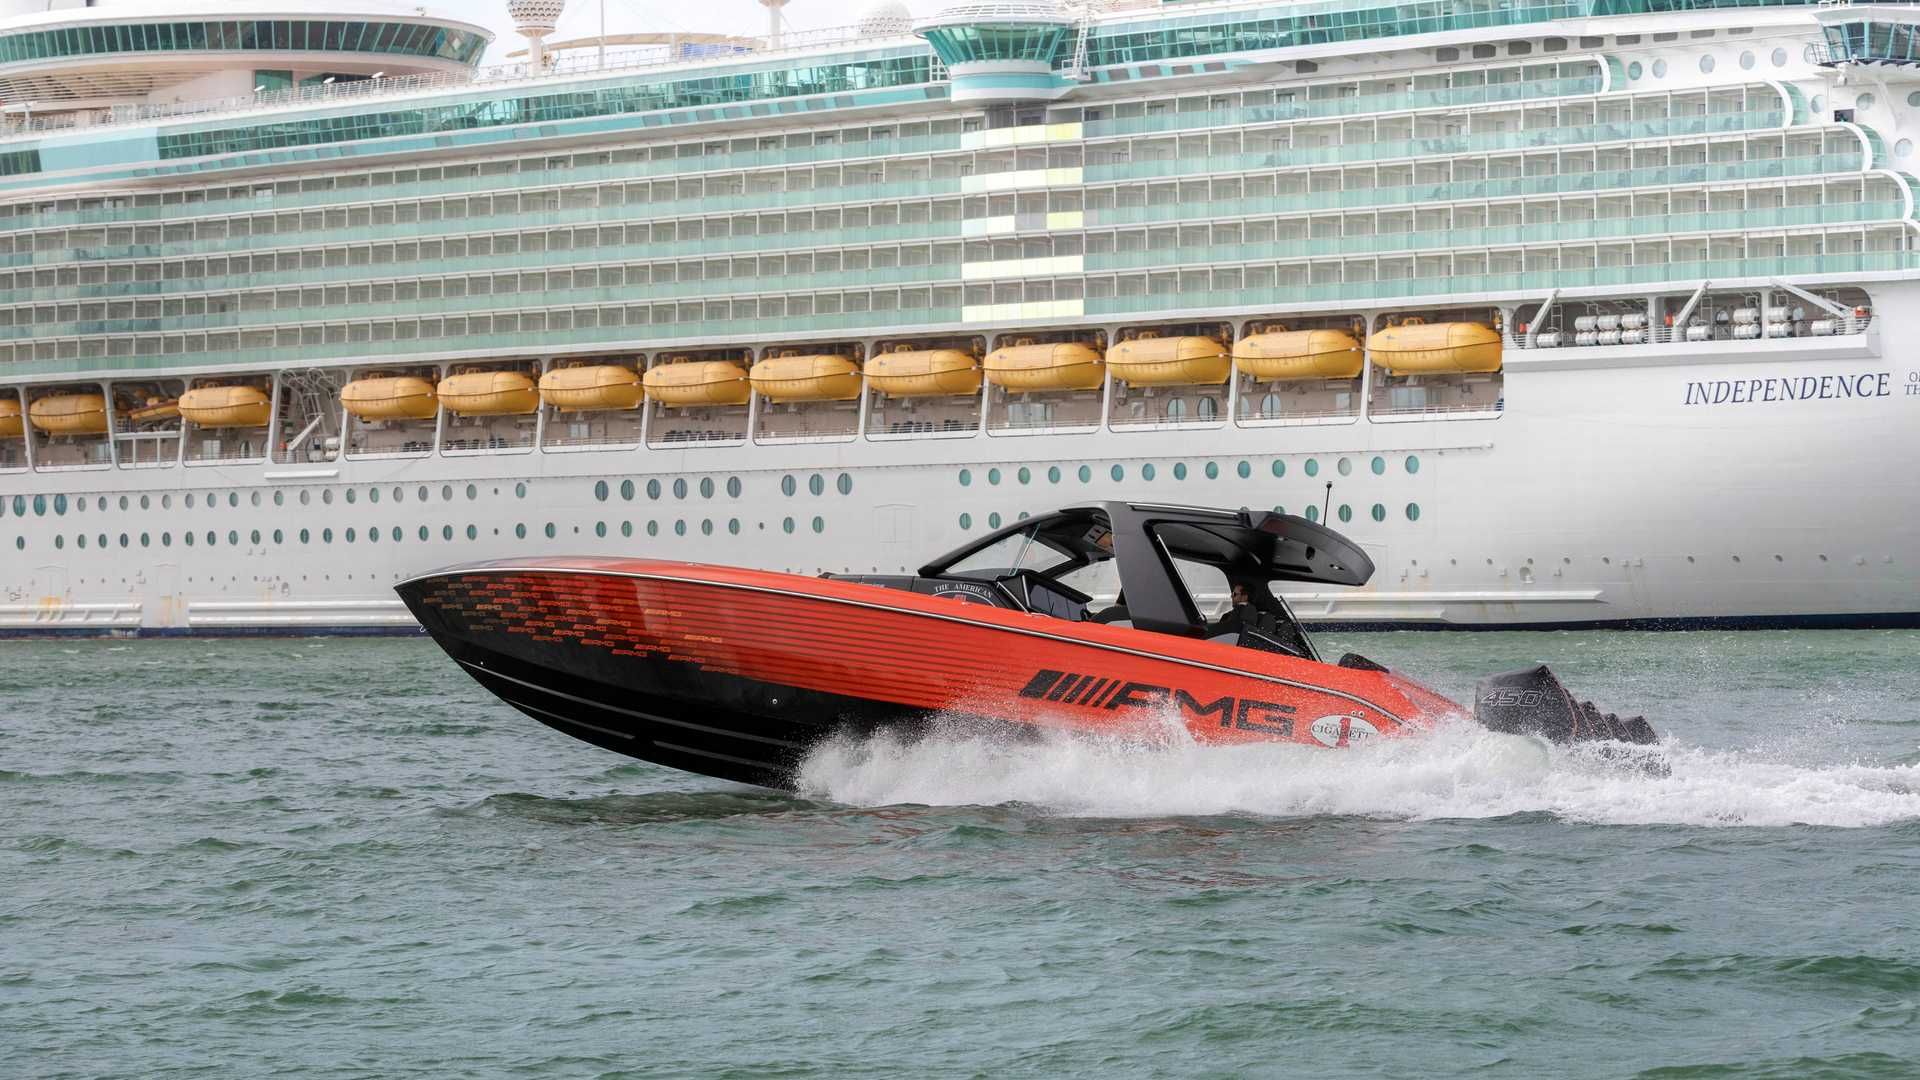 قایق پرسرعت مرسدس آ ام گ نایت هاوک سری سیاه / Mercedes-AMG Black Series Cigarette Boat در کنار کشتی